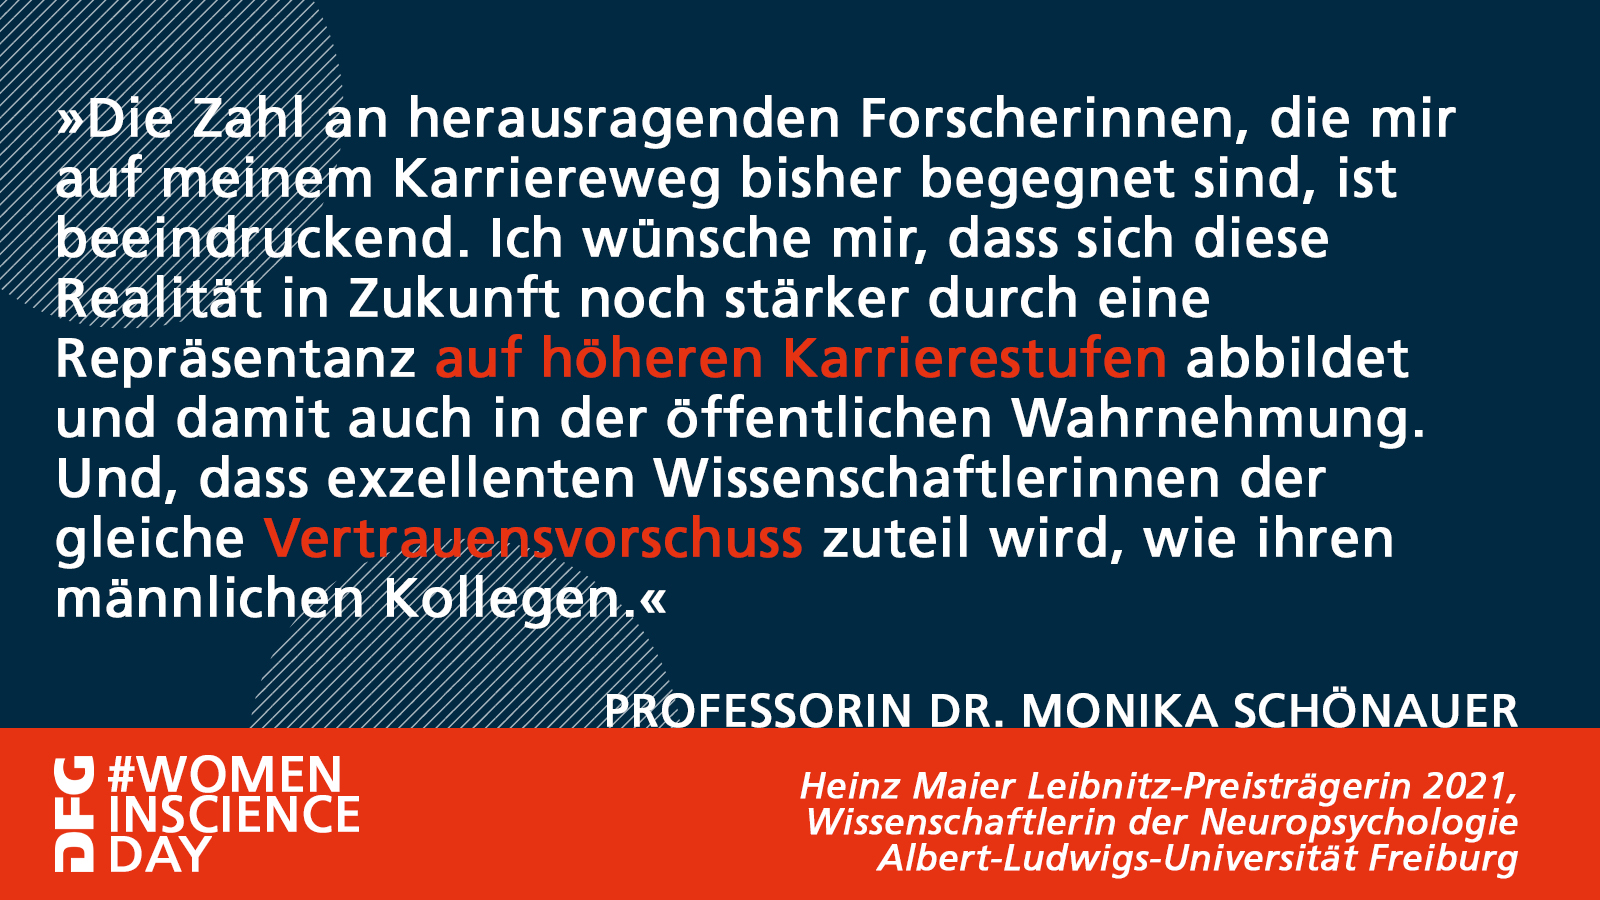 Statement Prof. Dr. Monika Schönauer